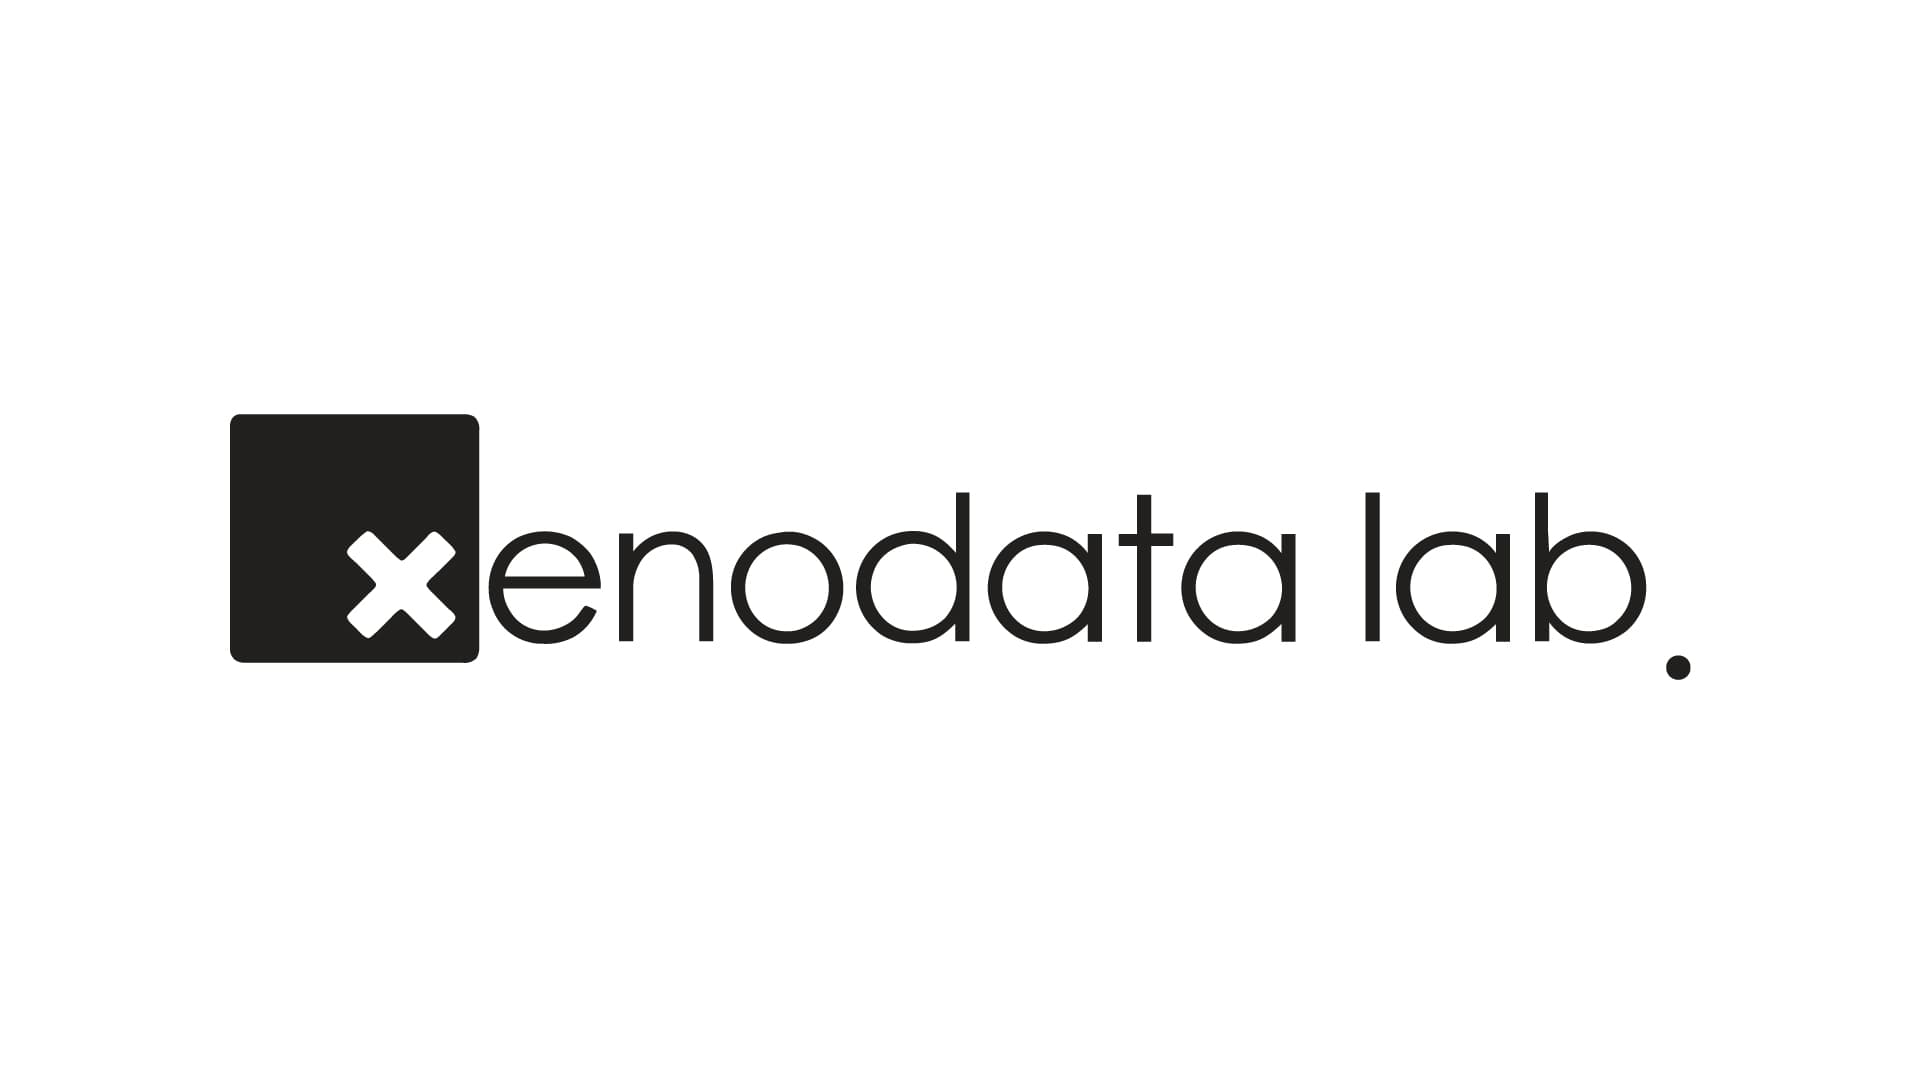 株式会社Xenodata lab.、エクステンションラウンドとして1.8億円の資金調達を実施